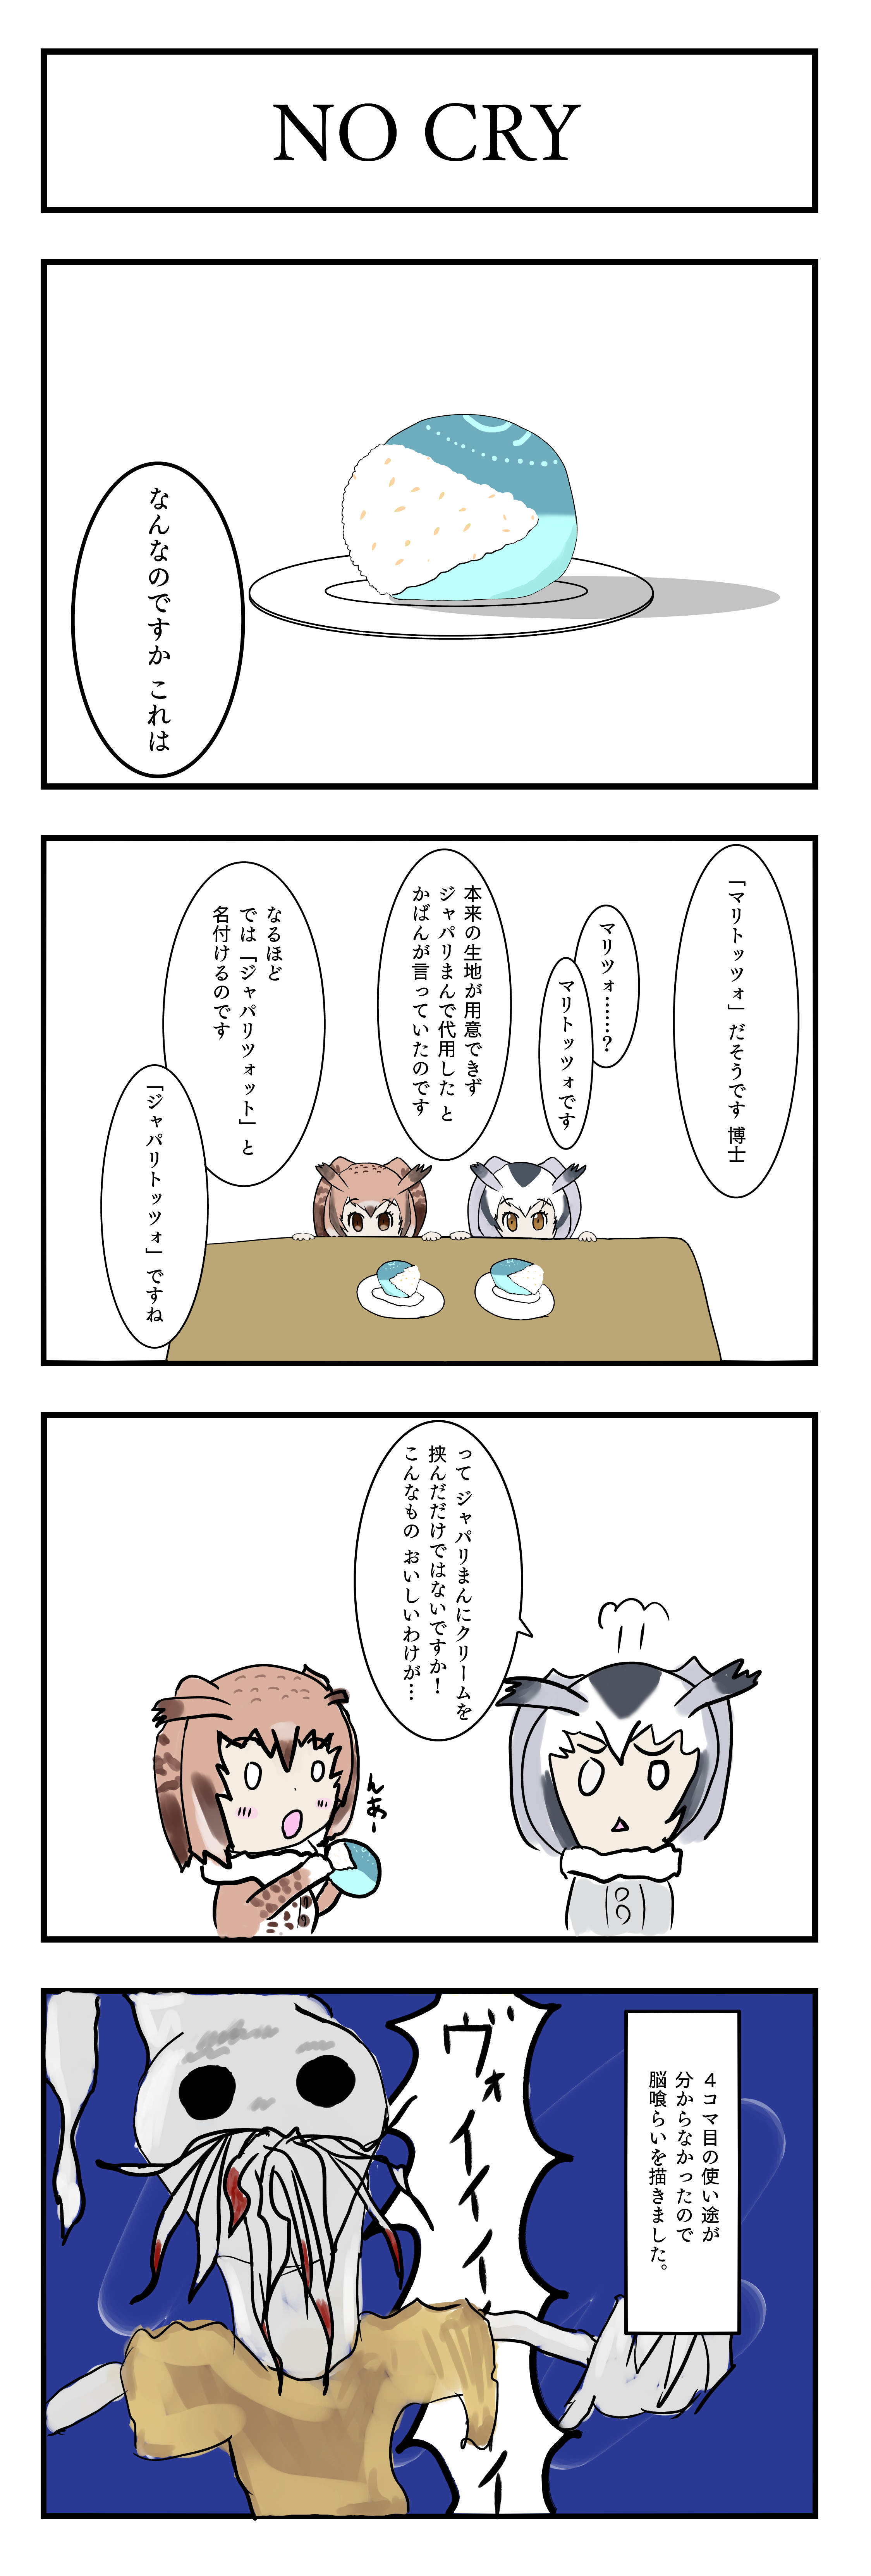 4 コマ漫画「NO CRY」